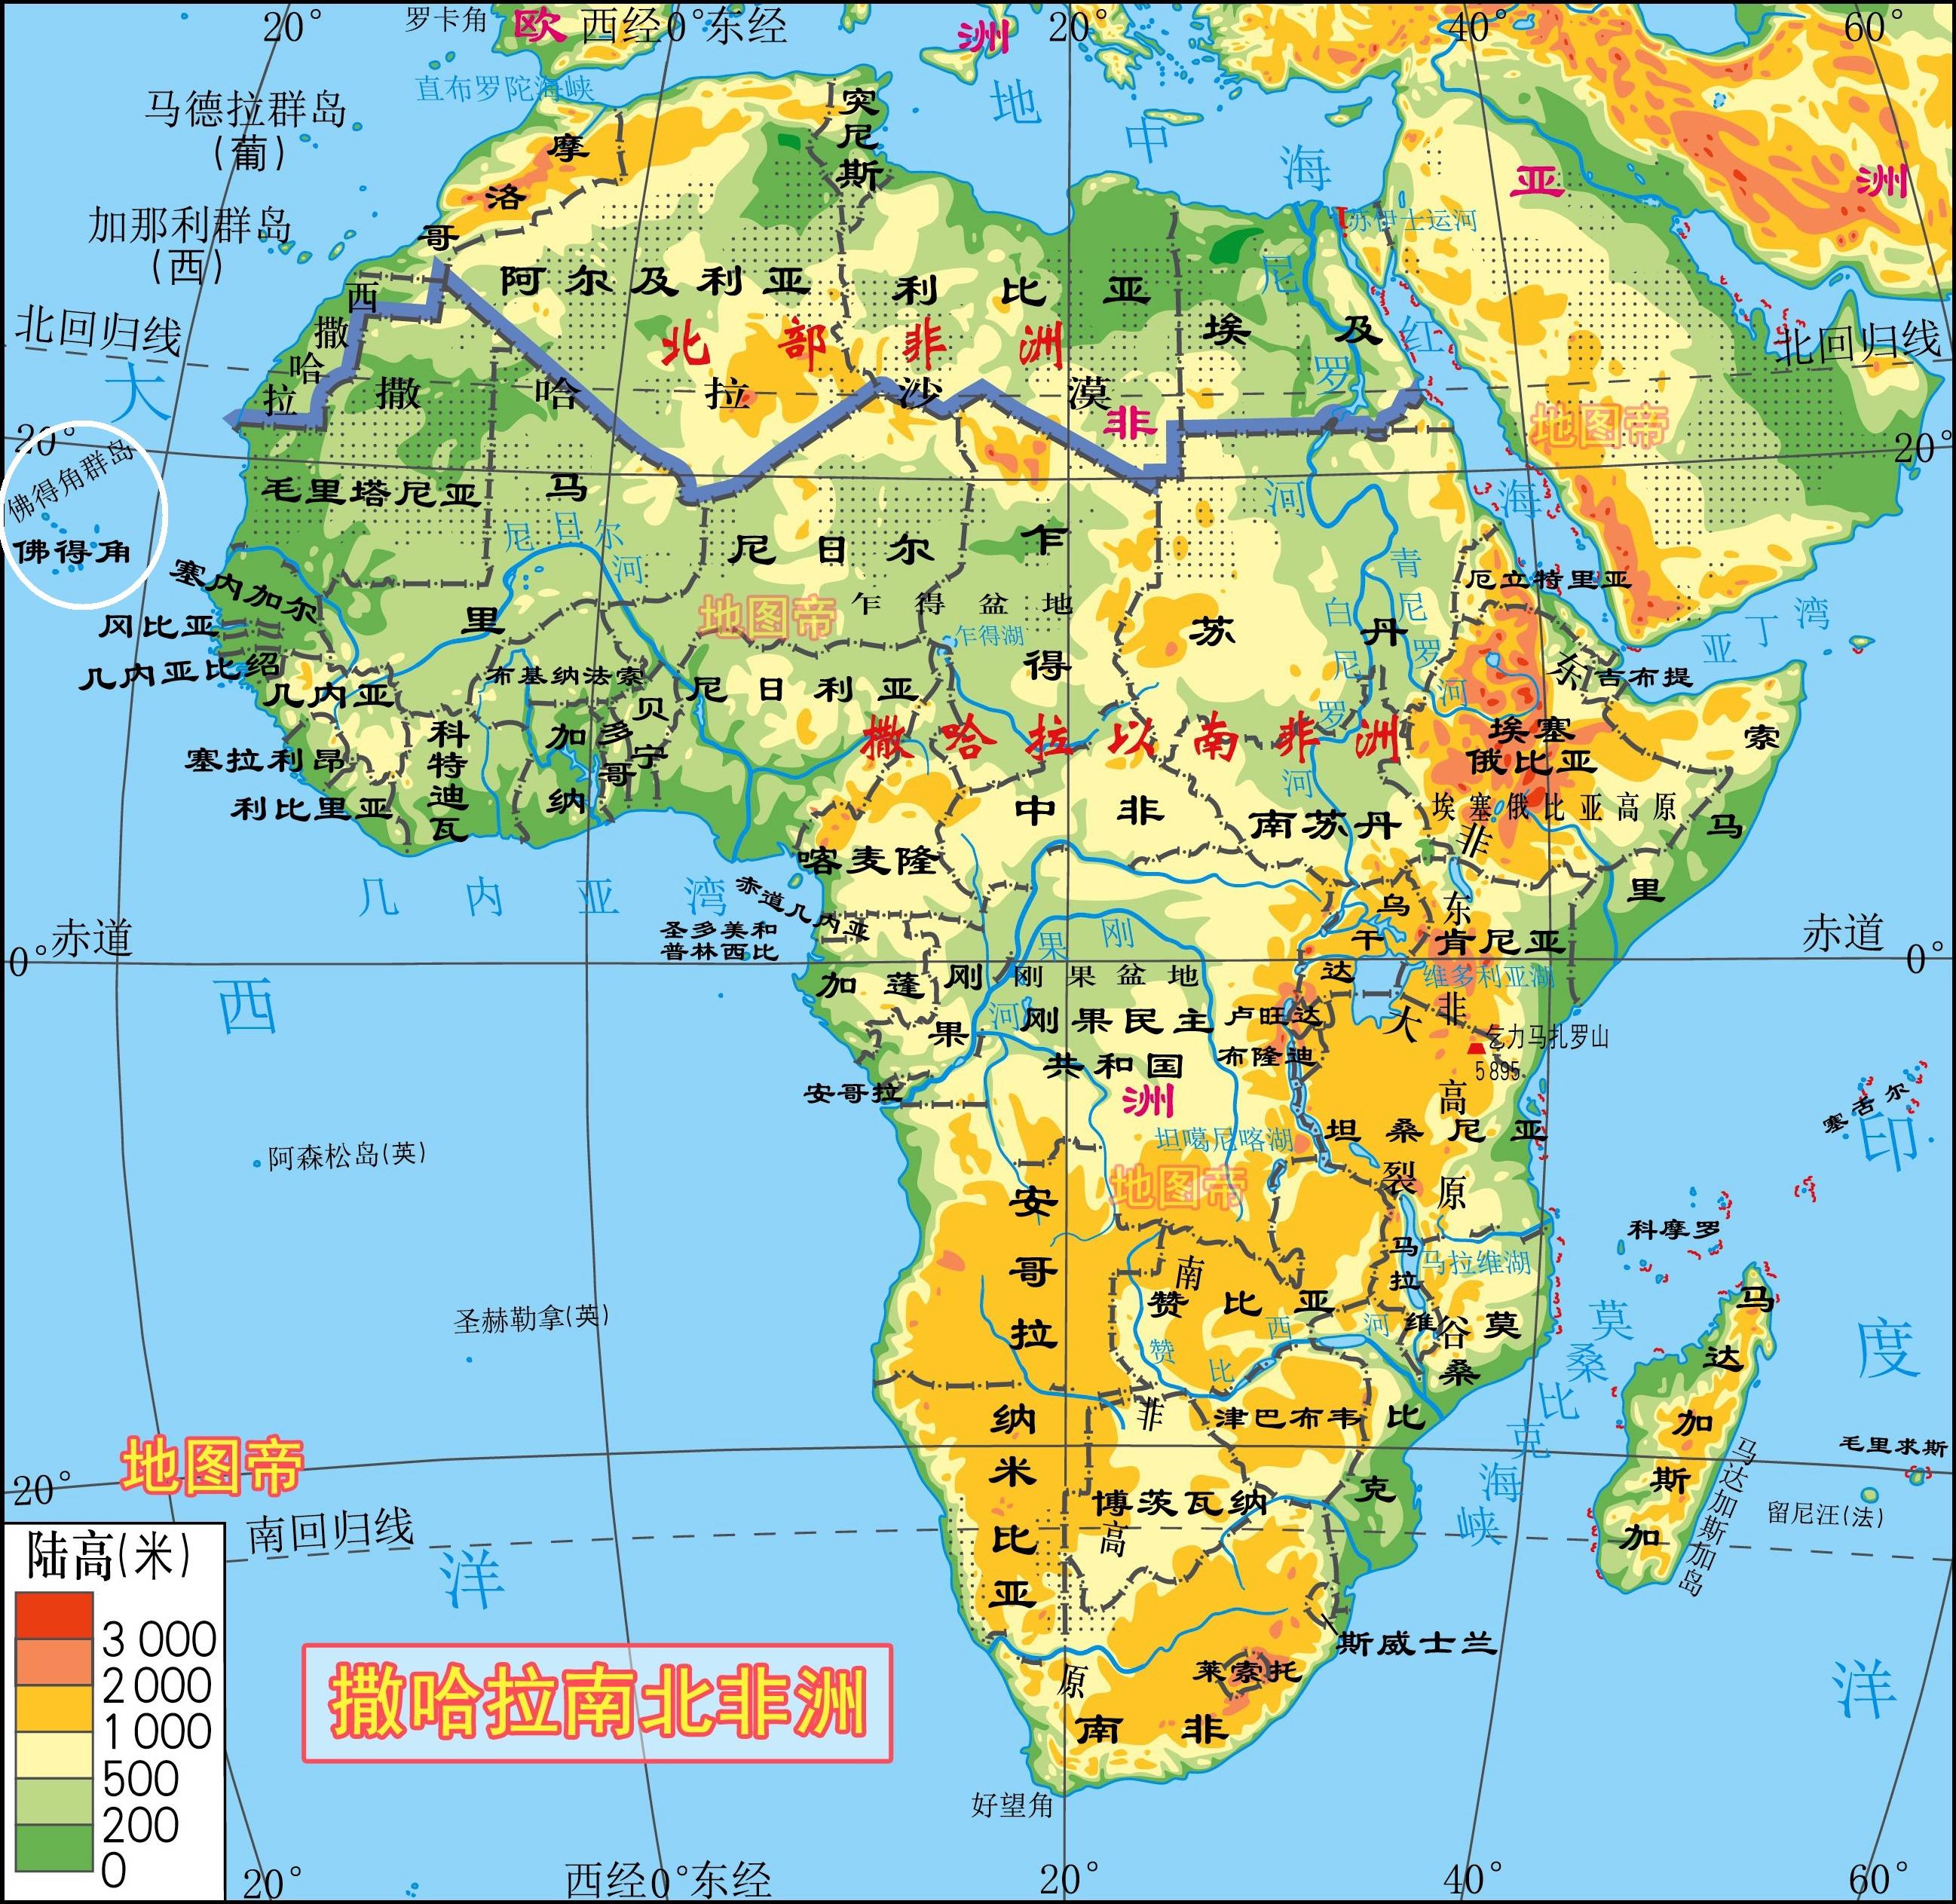 佛得角和非洲大陆相距遥远,对非洲的感情似乎还没有对葡萄牙感情深.